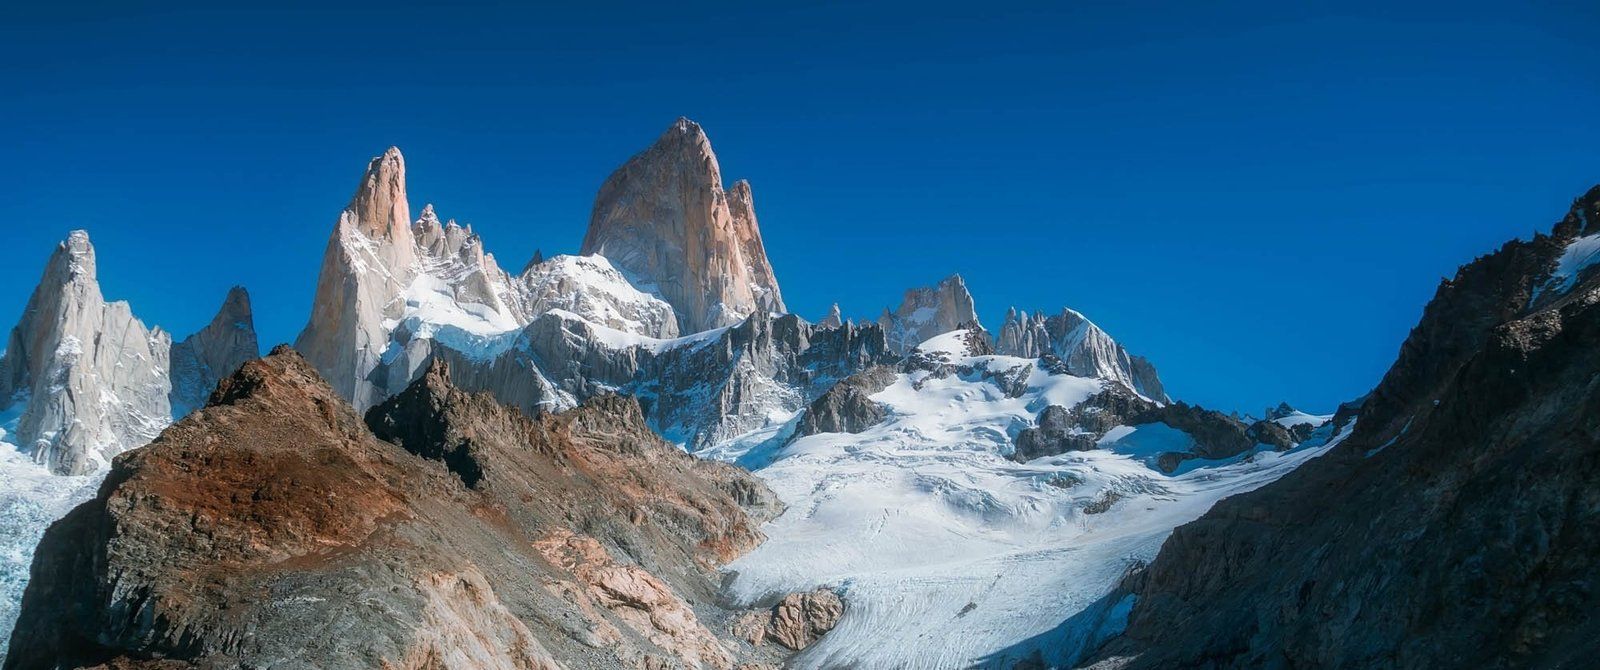 Sud de l'Argentine : Perito Moreno, Parc National Los Glaciares, Fitz Roy
